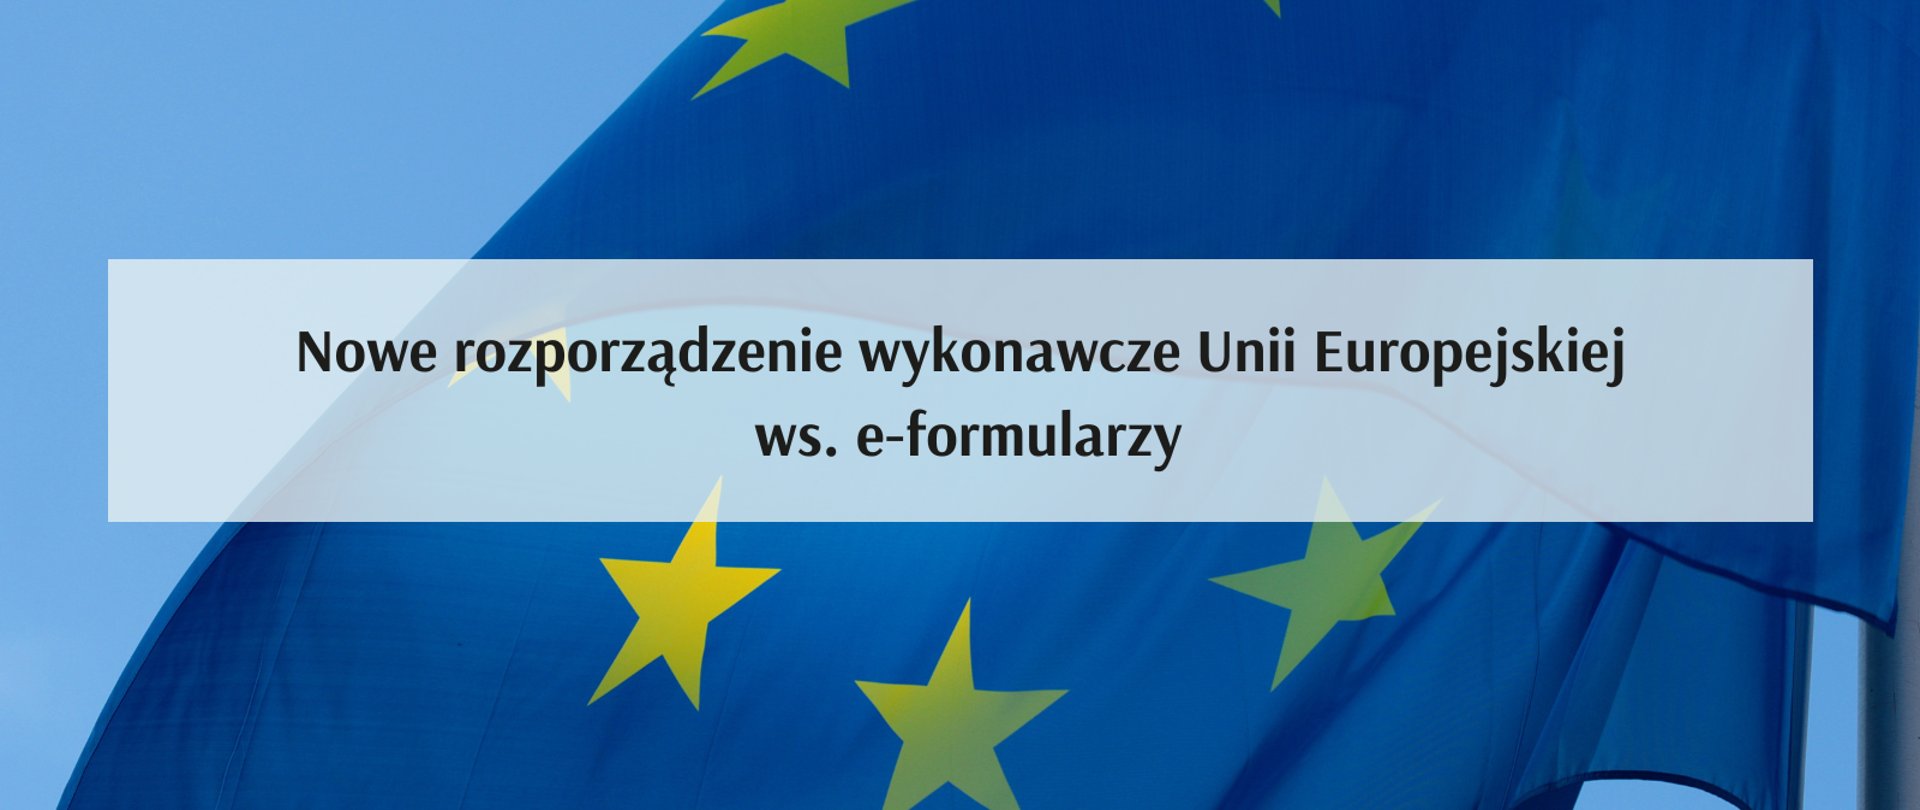 Nowe rozporządzenie wykonawcze UE ws. e-formularzy